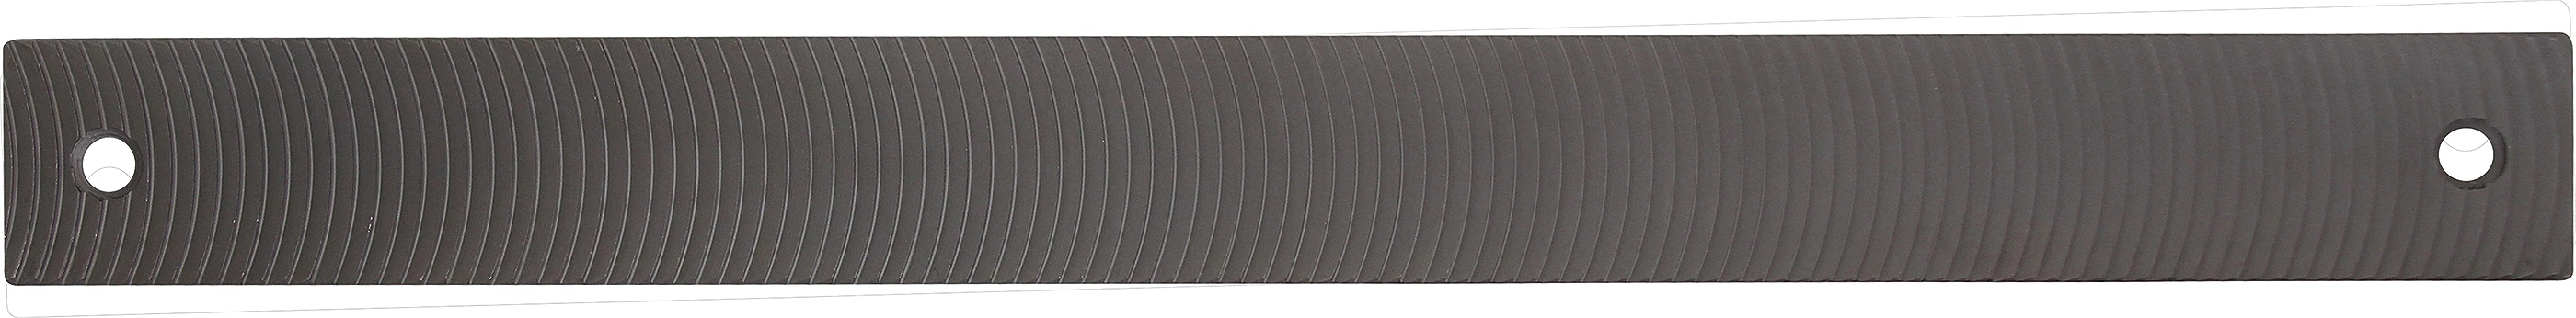 Karosseriefeilenblatt - grob - halbrund gefräst - 350 x 35 x 4 mm